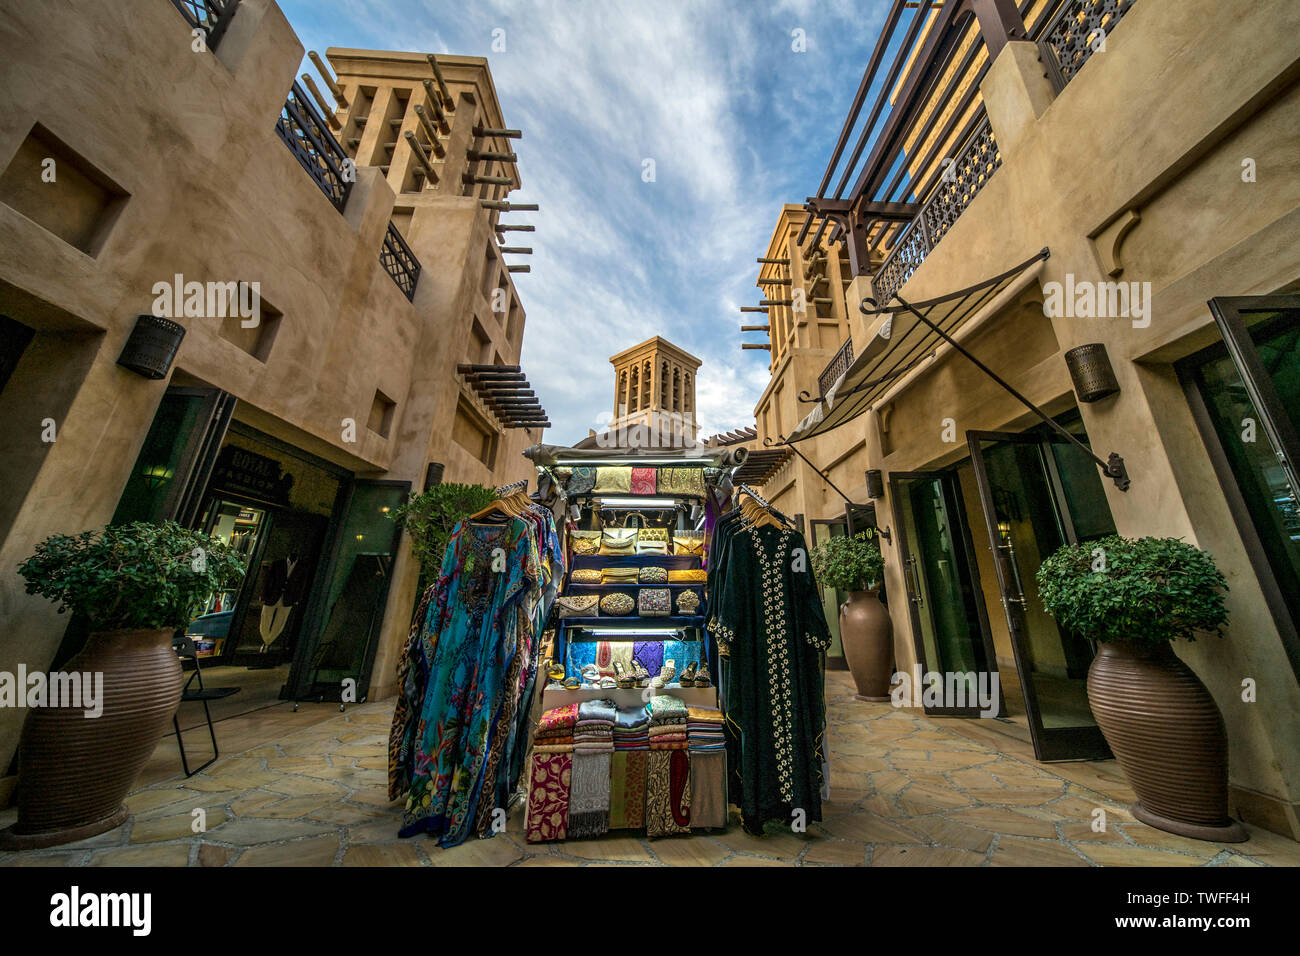 Un comerciante cala llena de coloridas mercancías árabe a lo largo de los caminos de un mercado de Dubai. Foto de stock